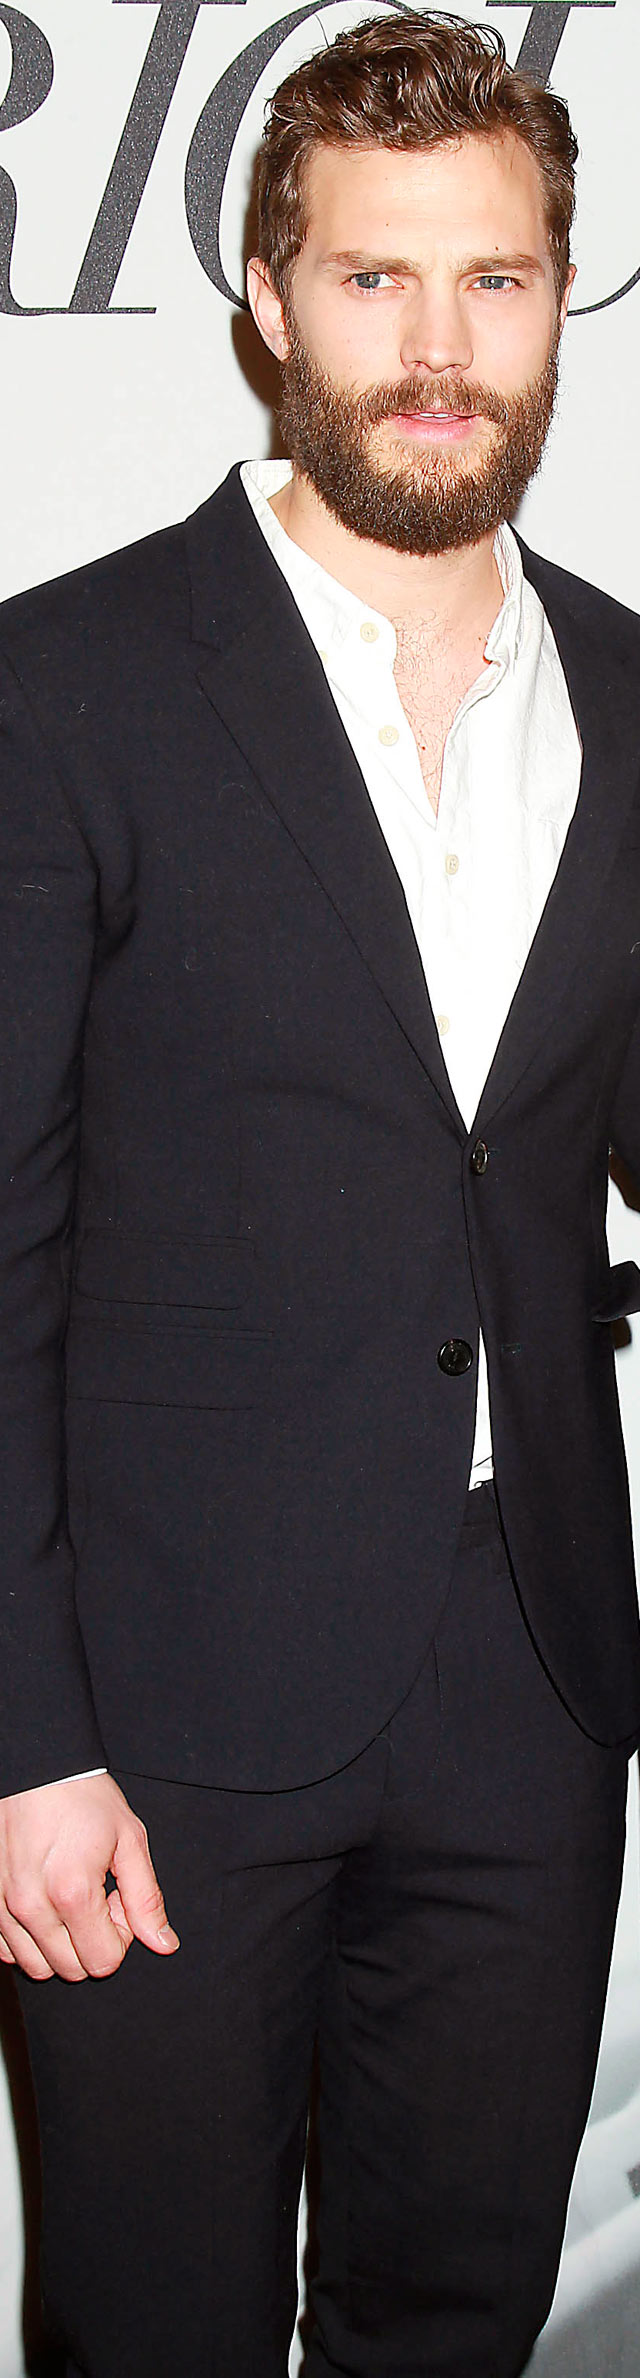 Jamie Dornan Cincuenta sombras de Grey Evento con fans de Today Show en Nueva York